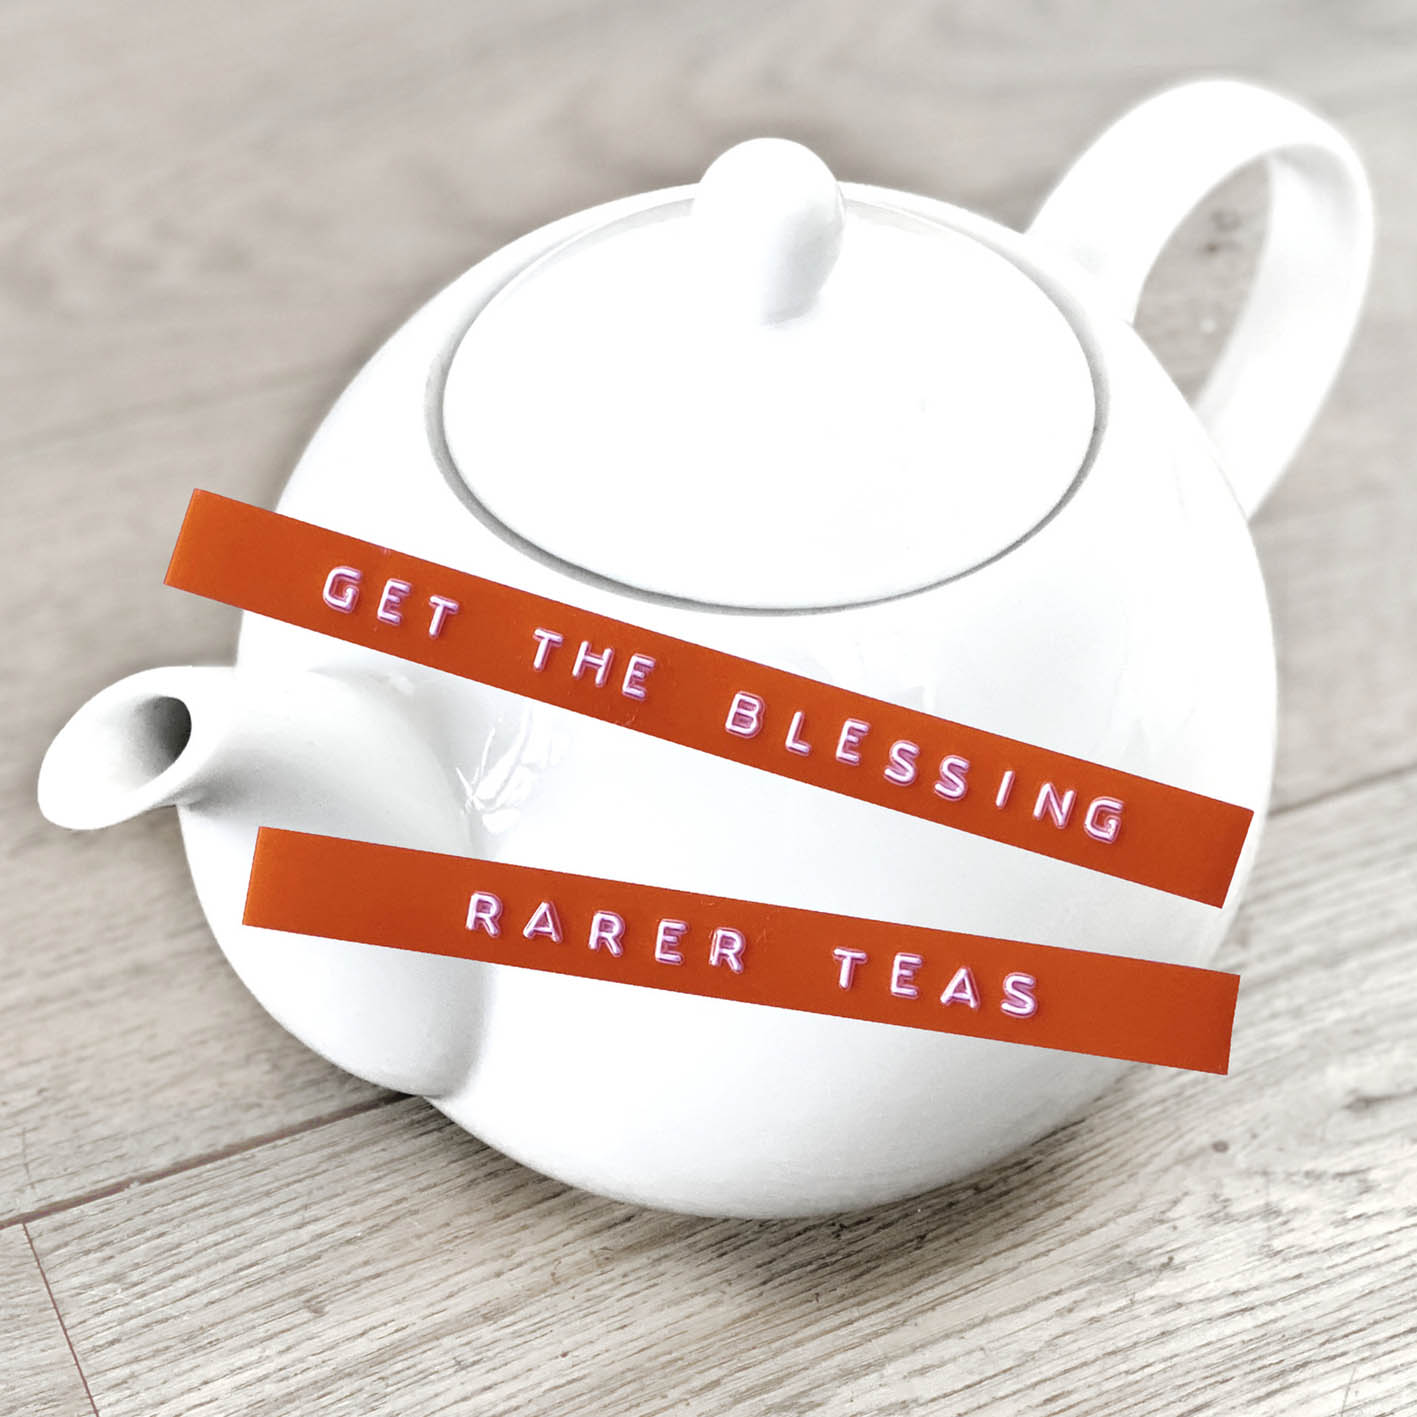 GET THE BLESSING - Rarer Teas cover 